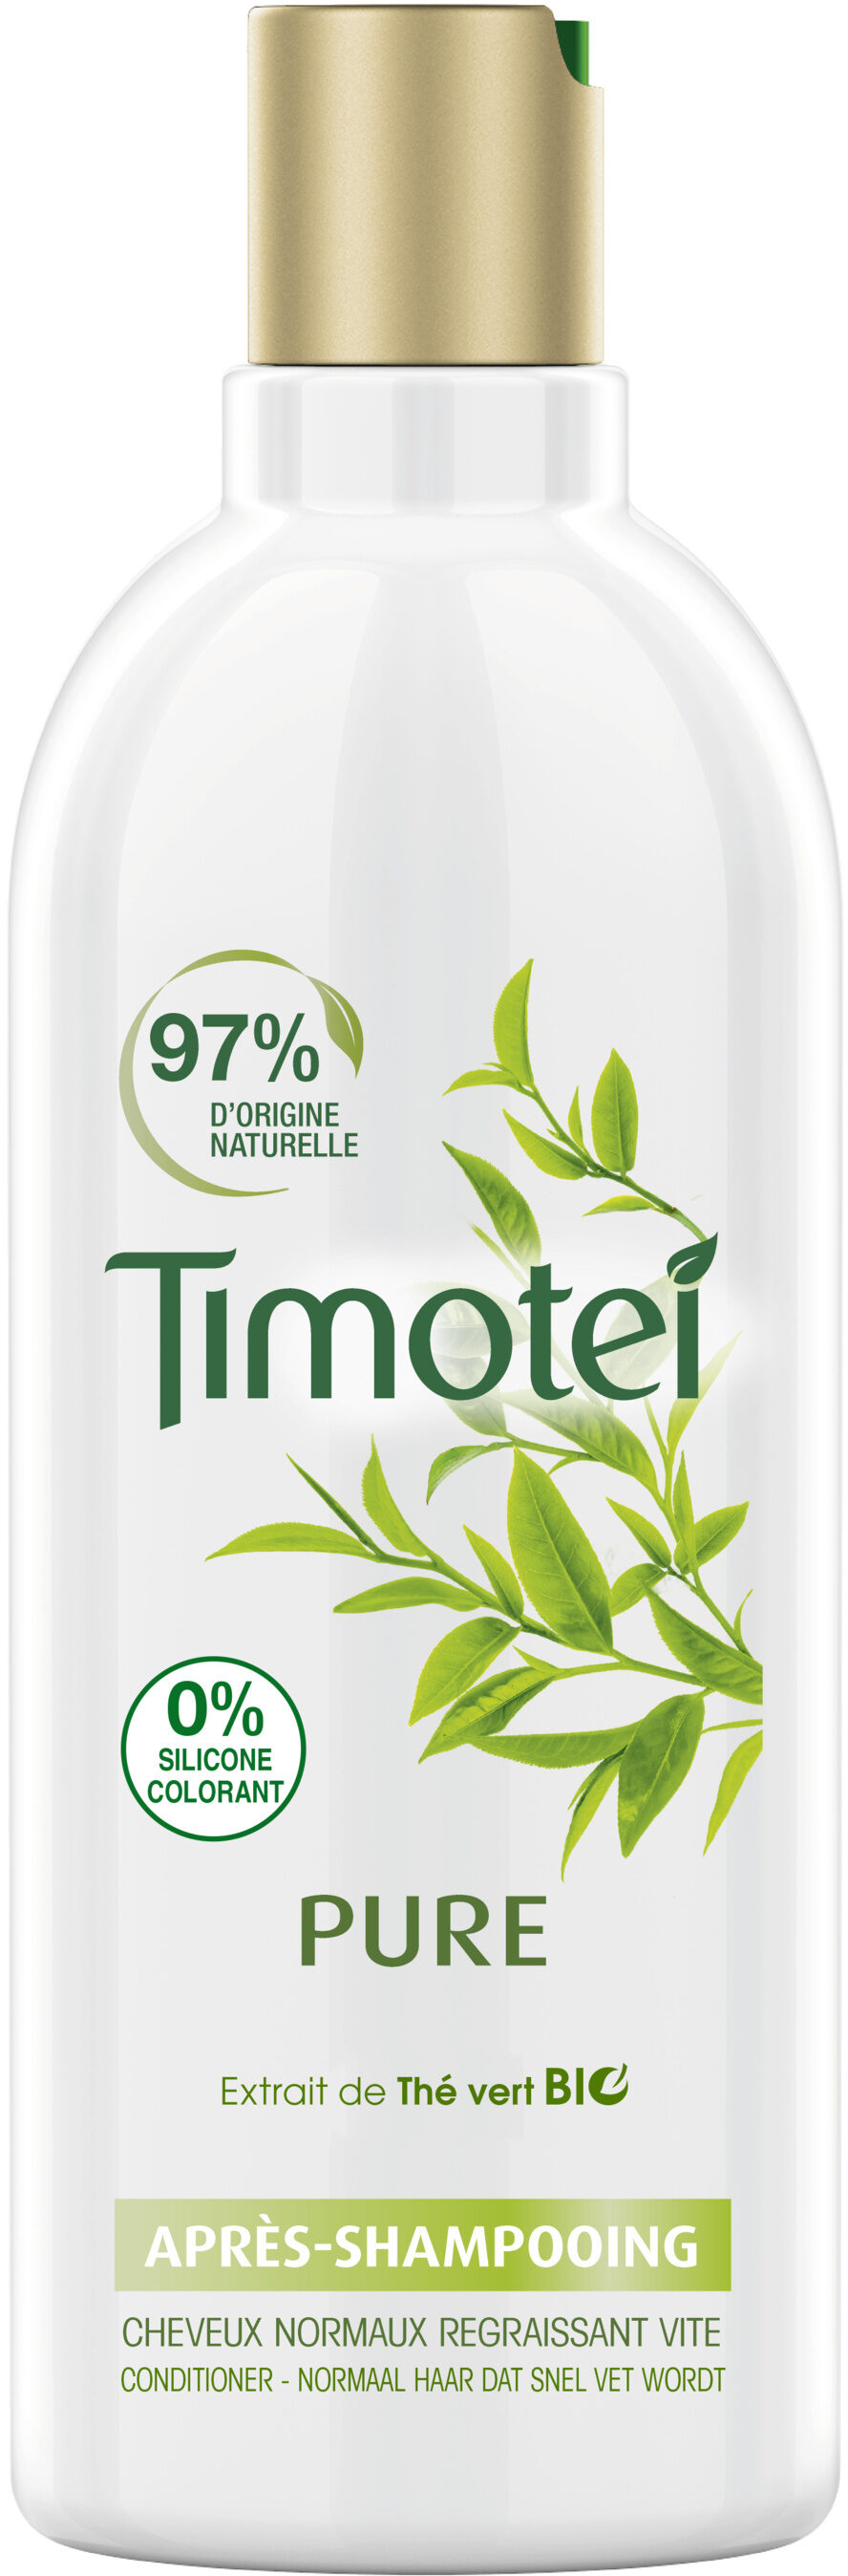 Timotei Après Shampoing Femme Enrichie à l'extrait de Thé Vert Bio Cheveux Normaux - Product - fr